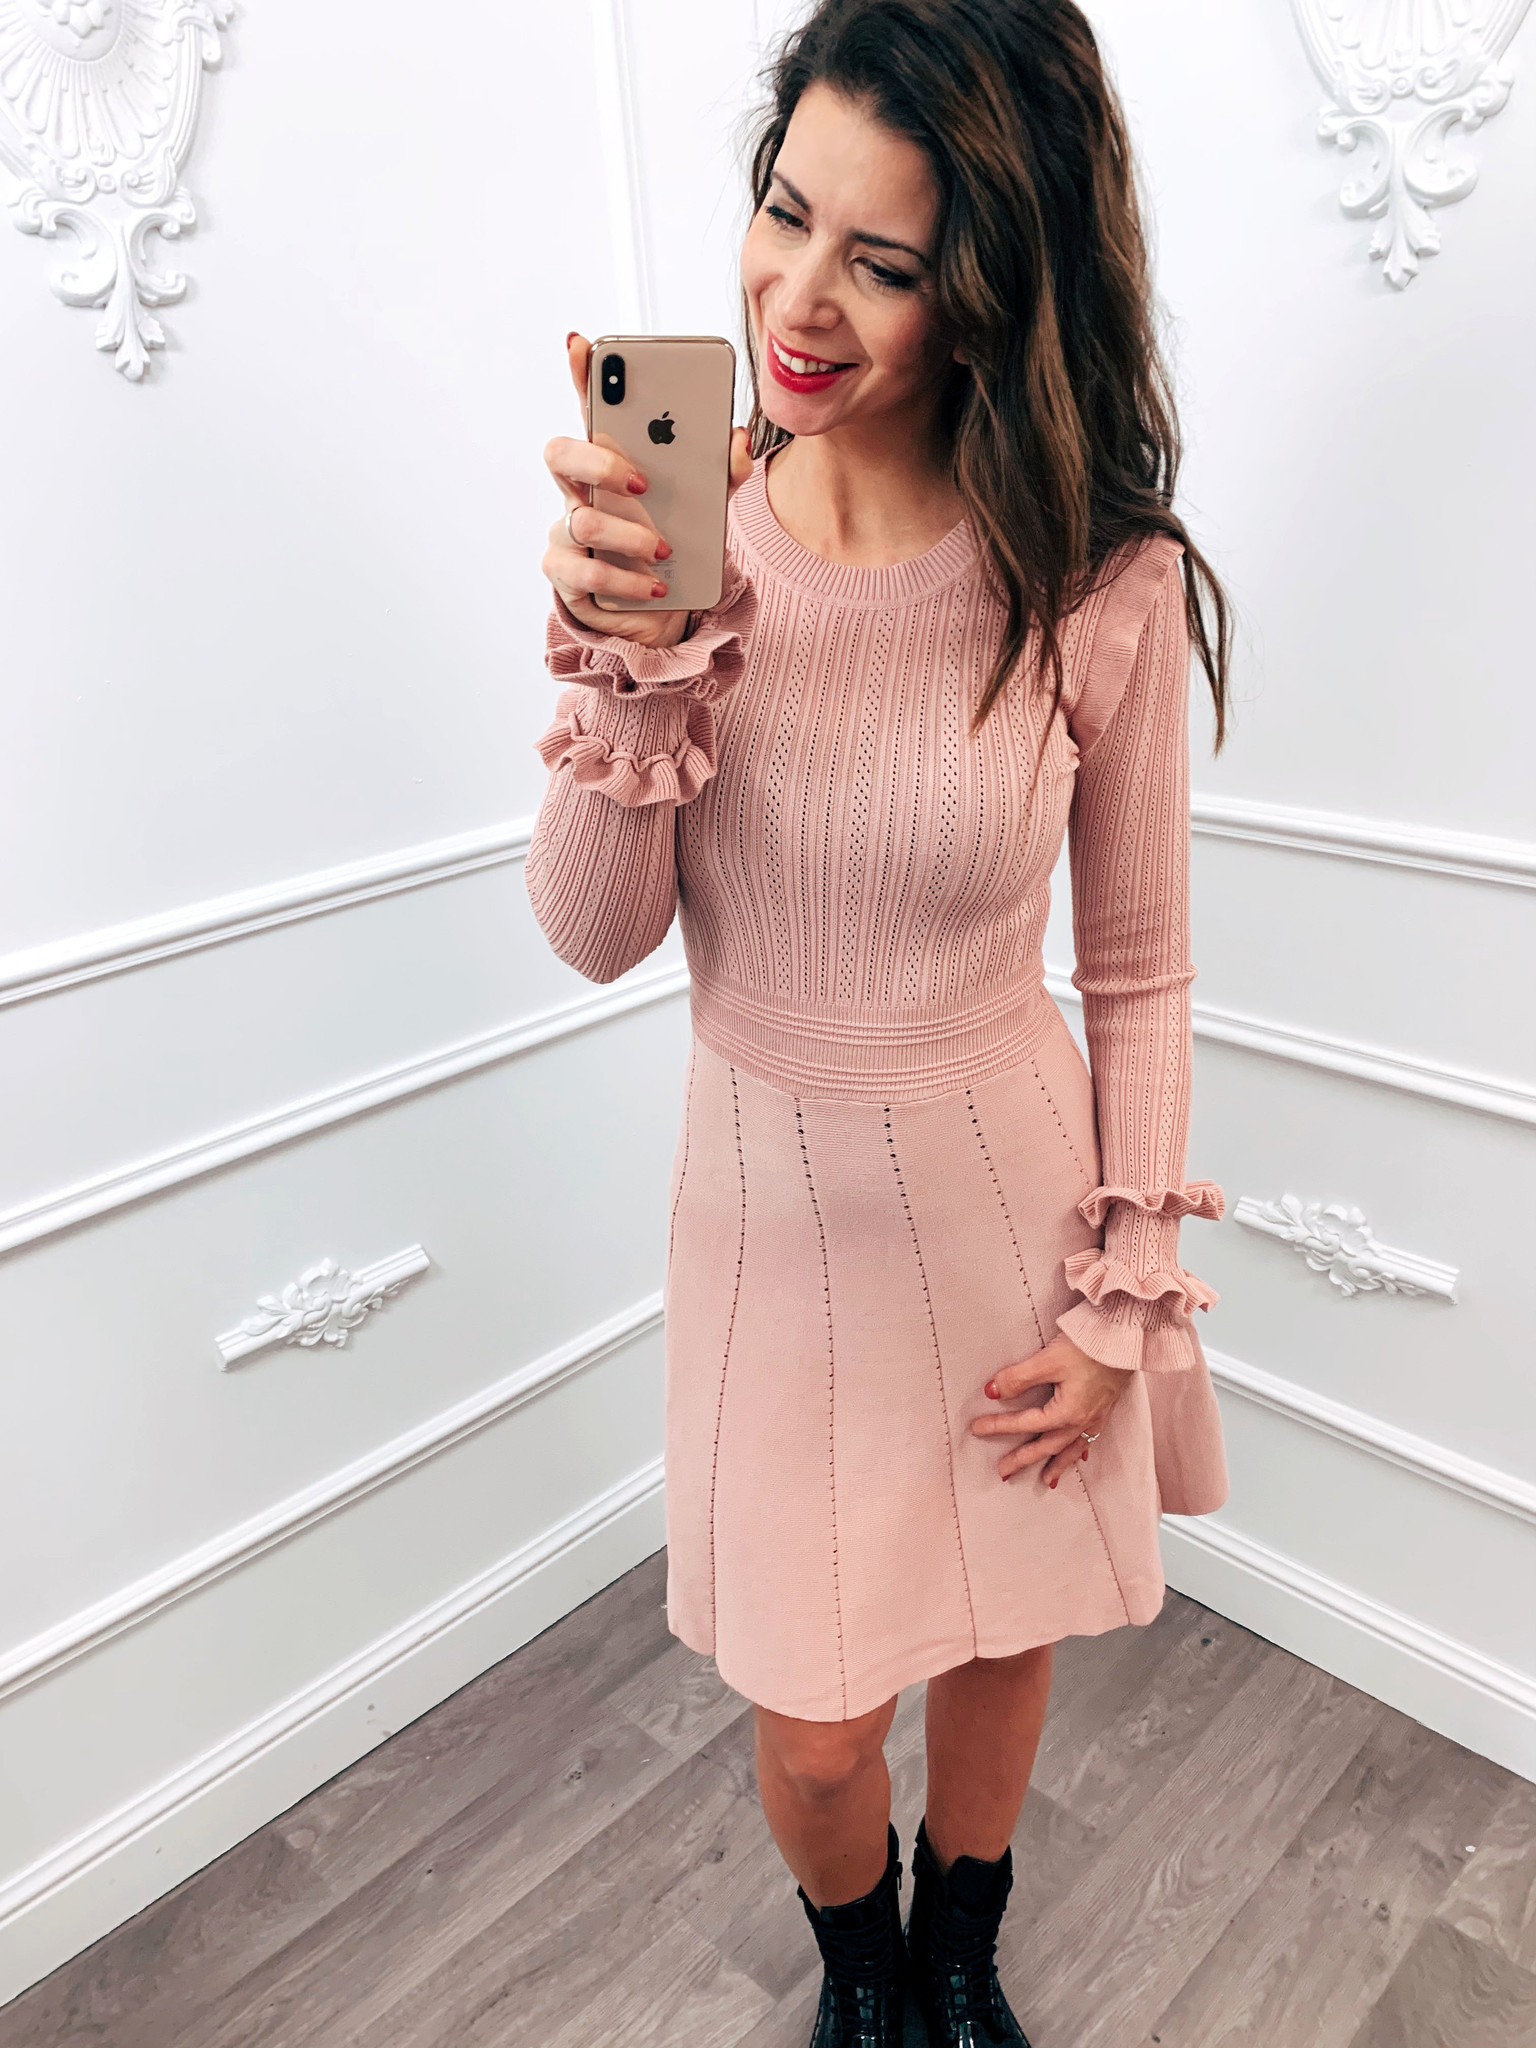 Must Dress Roze - Blush Fashionstore